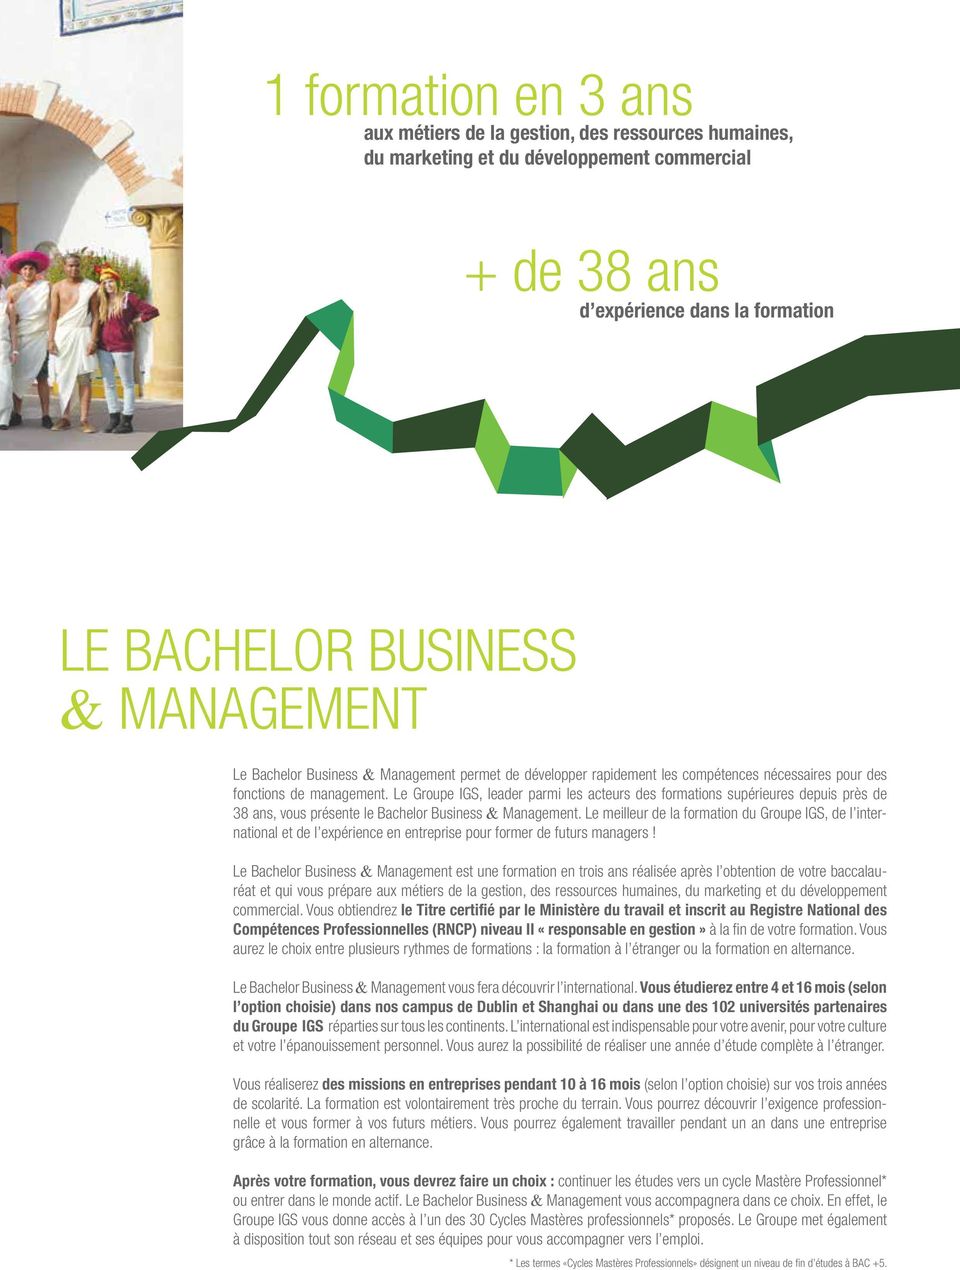 Le Groupe IGS, leader parmi les acteurs des formations supérieures depuis près de 38 ans, vous présente le Bachelor Business & Management.